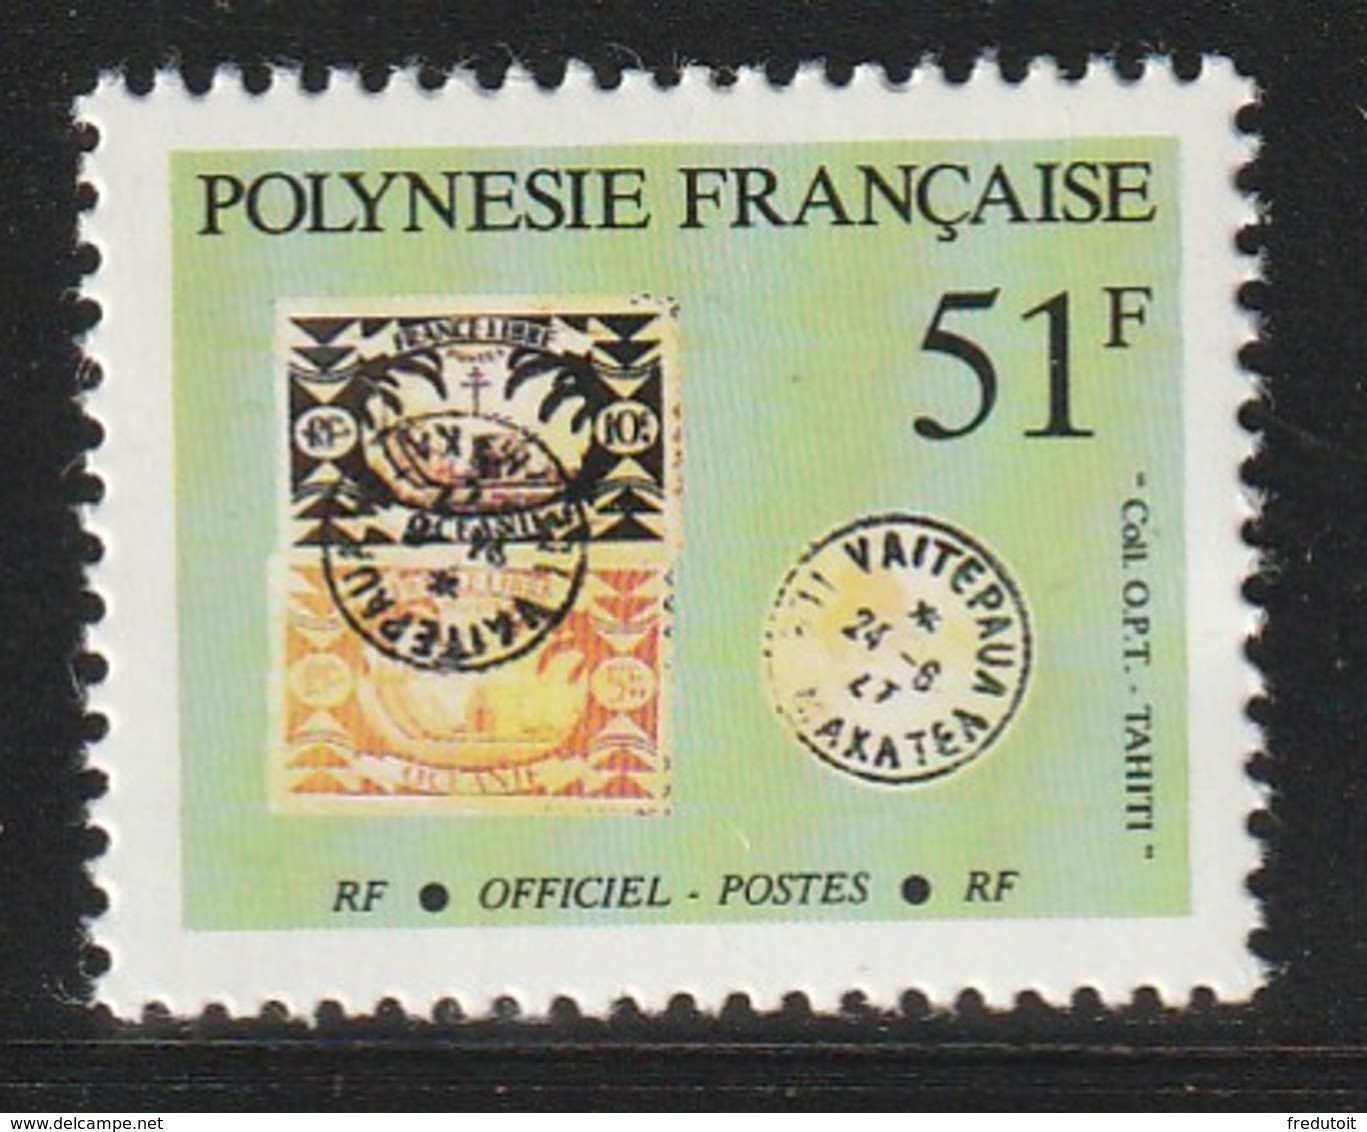 POLYNESIE - Timbres De Service  N° 26  ** (1994) - Officials